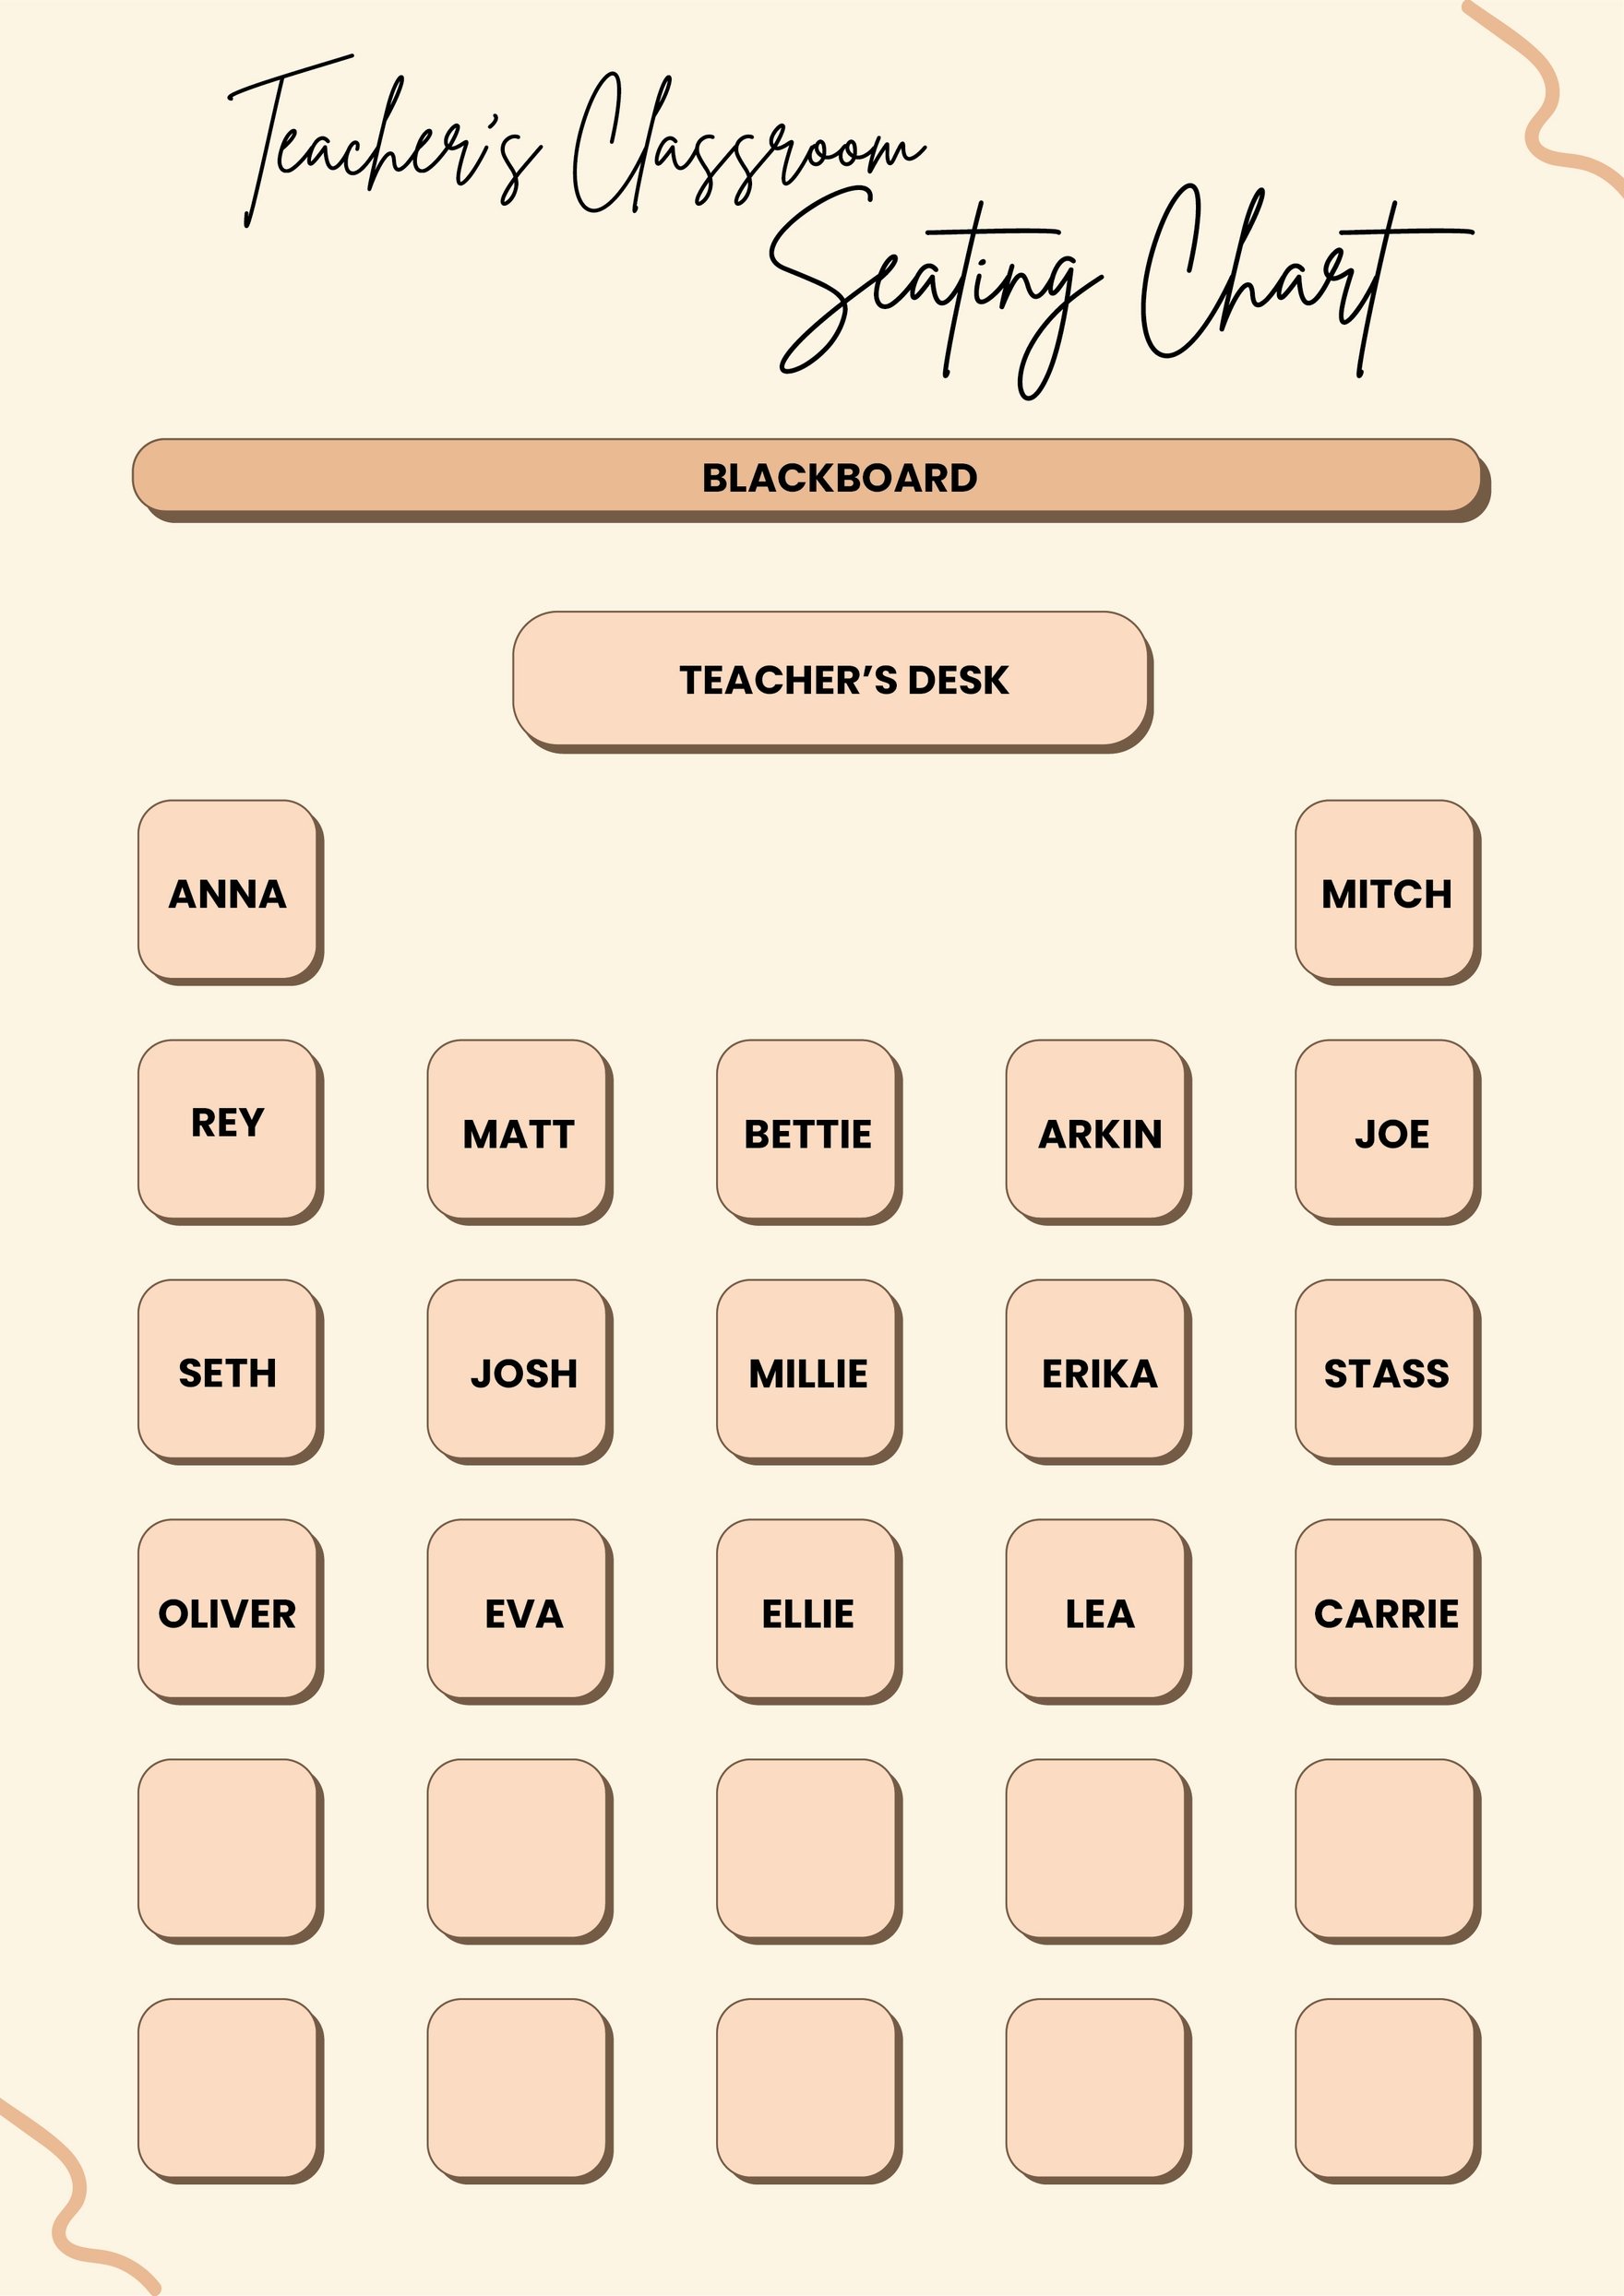 Teacher's Classroom Seating Chart